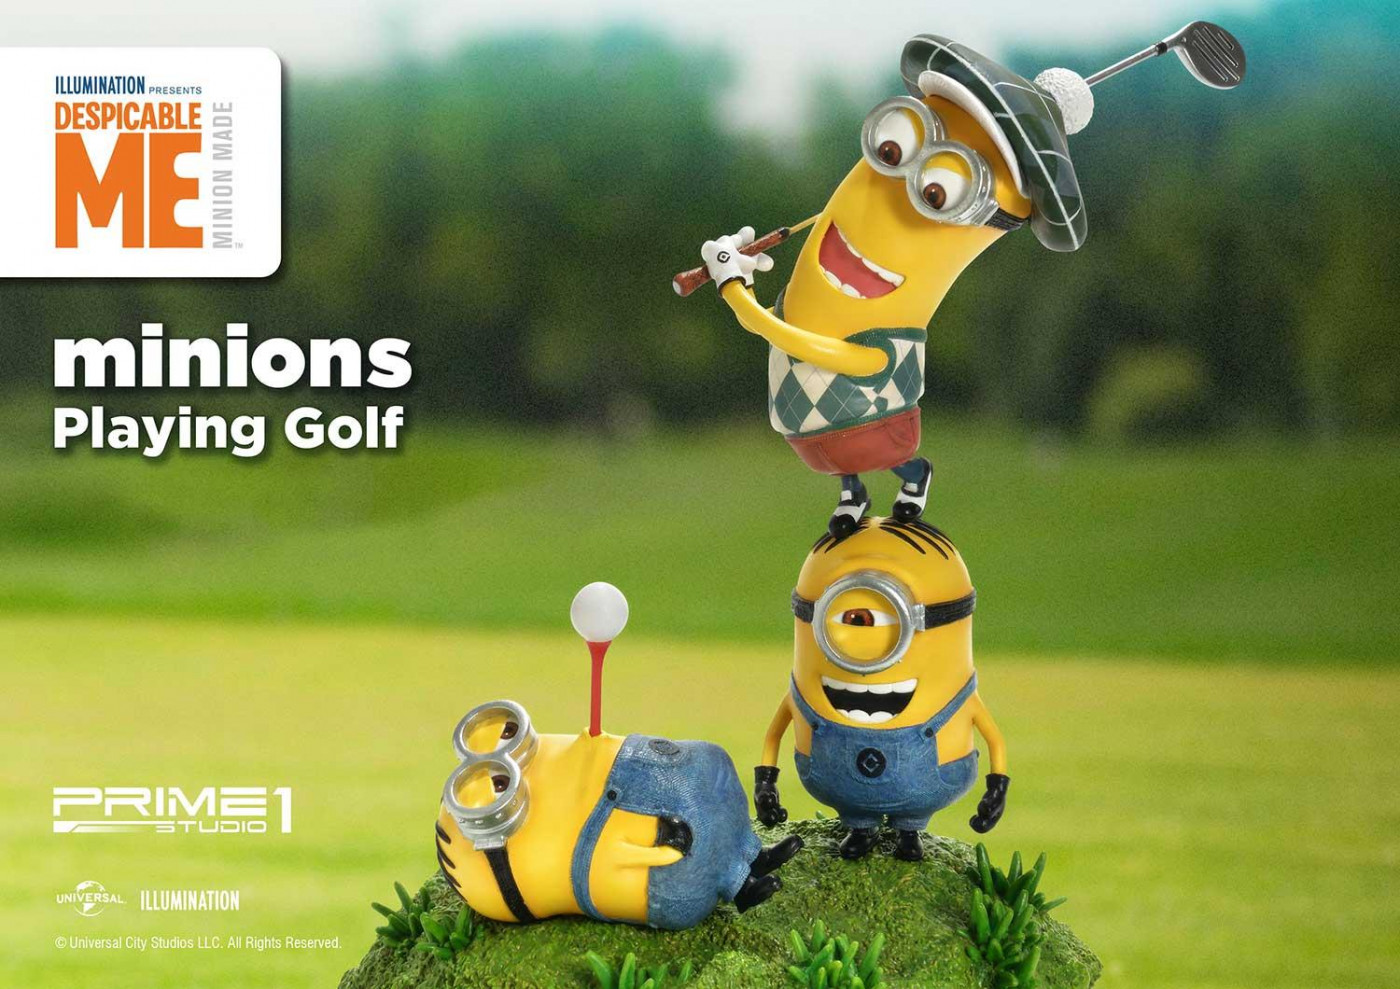 ミニオンズ プライム1スタジオ ミニオンゴルフ フィギュア予約開始 コレクションしやすいサイズ感で登場 Figure News